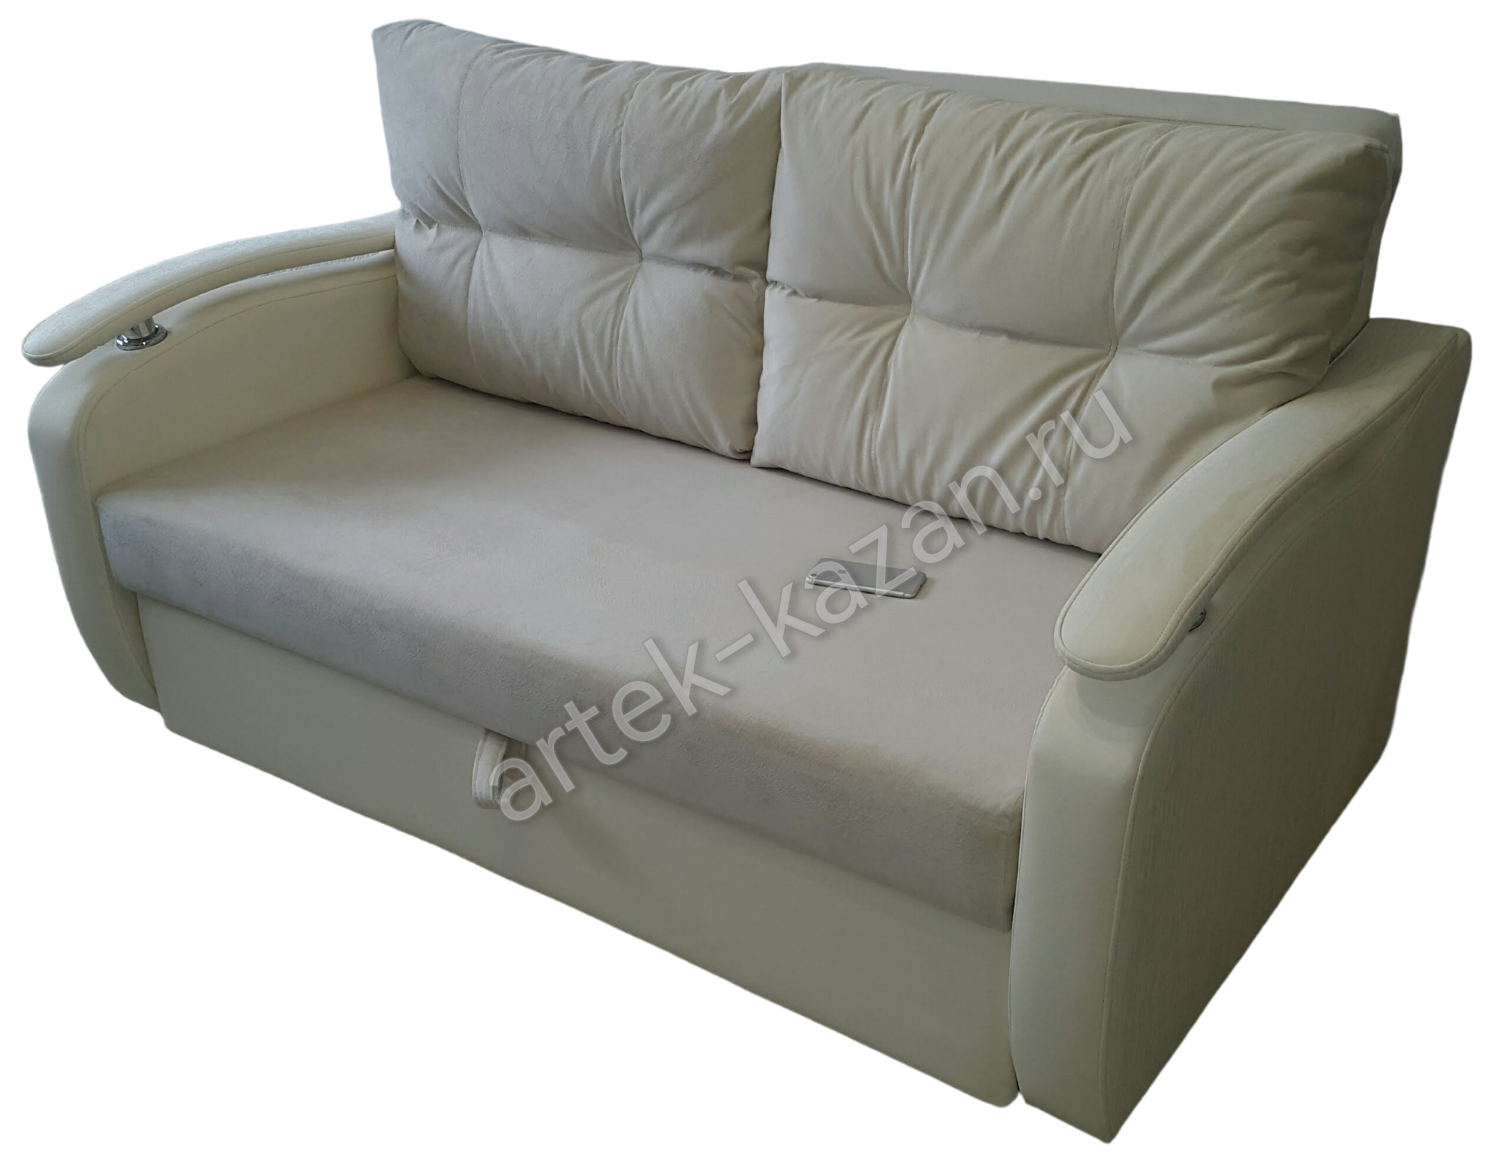 Мини диван на выкатном механизме Миник фото № 25. Купить недорогой диван по низкой цене от производителя можно у нас.